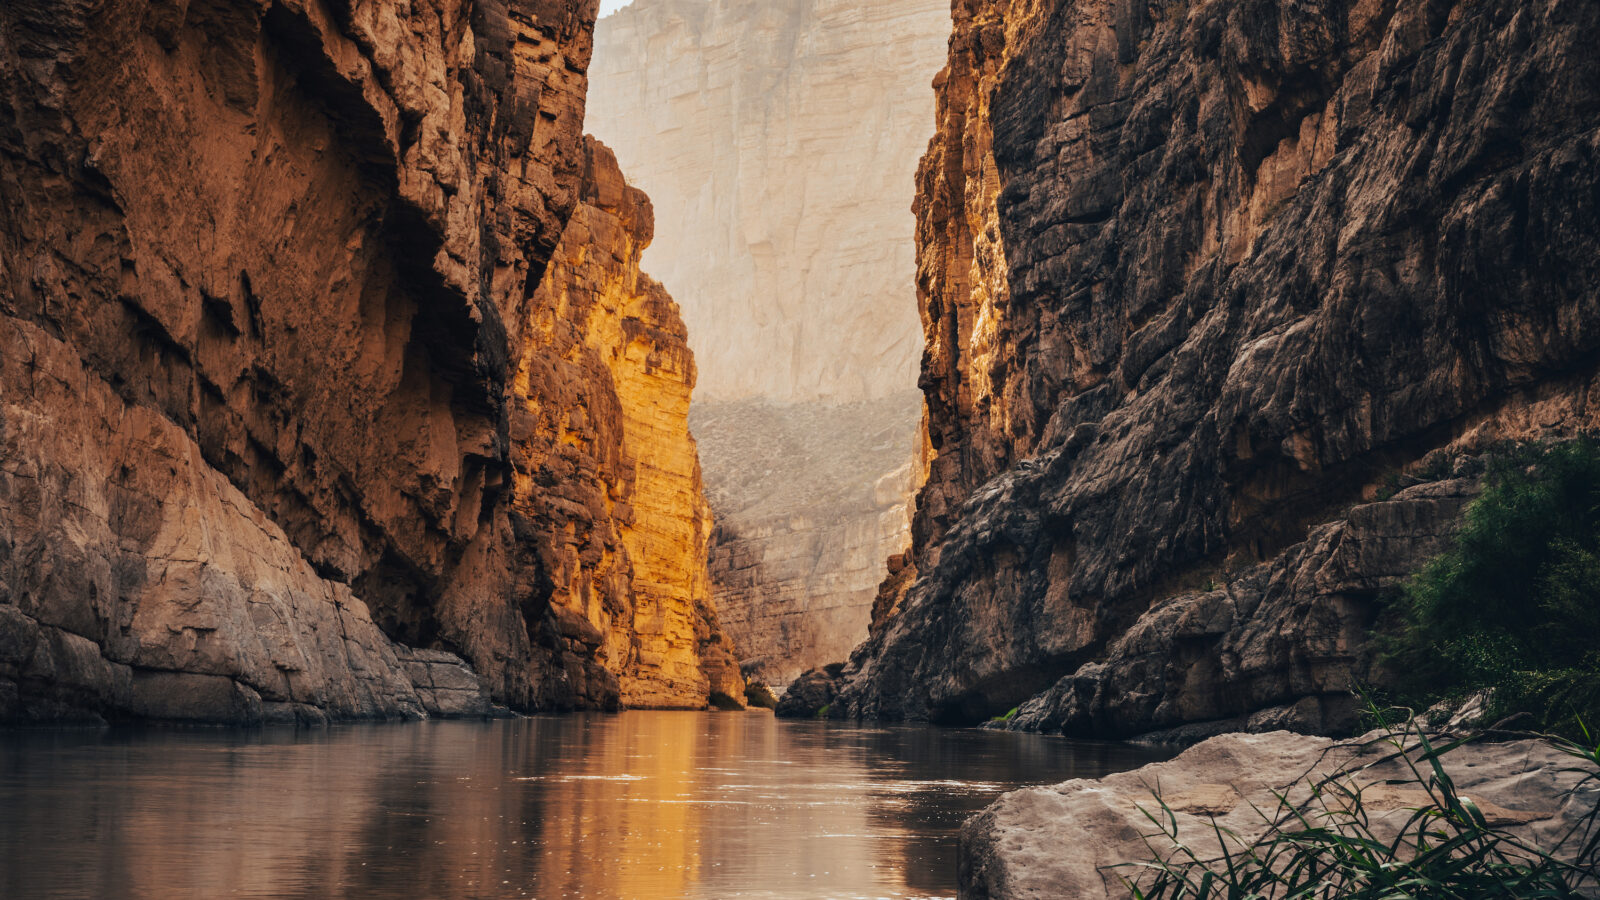 A river snakes through a sunlit canyon